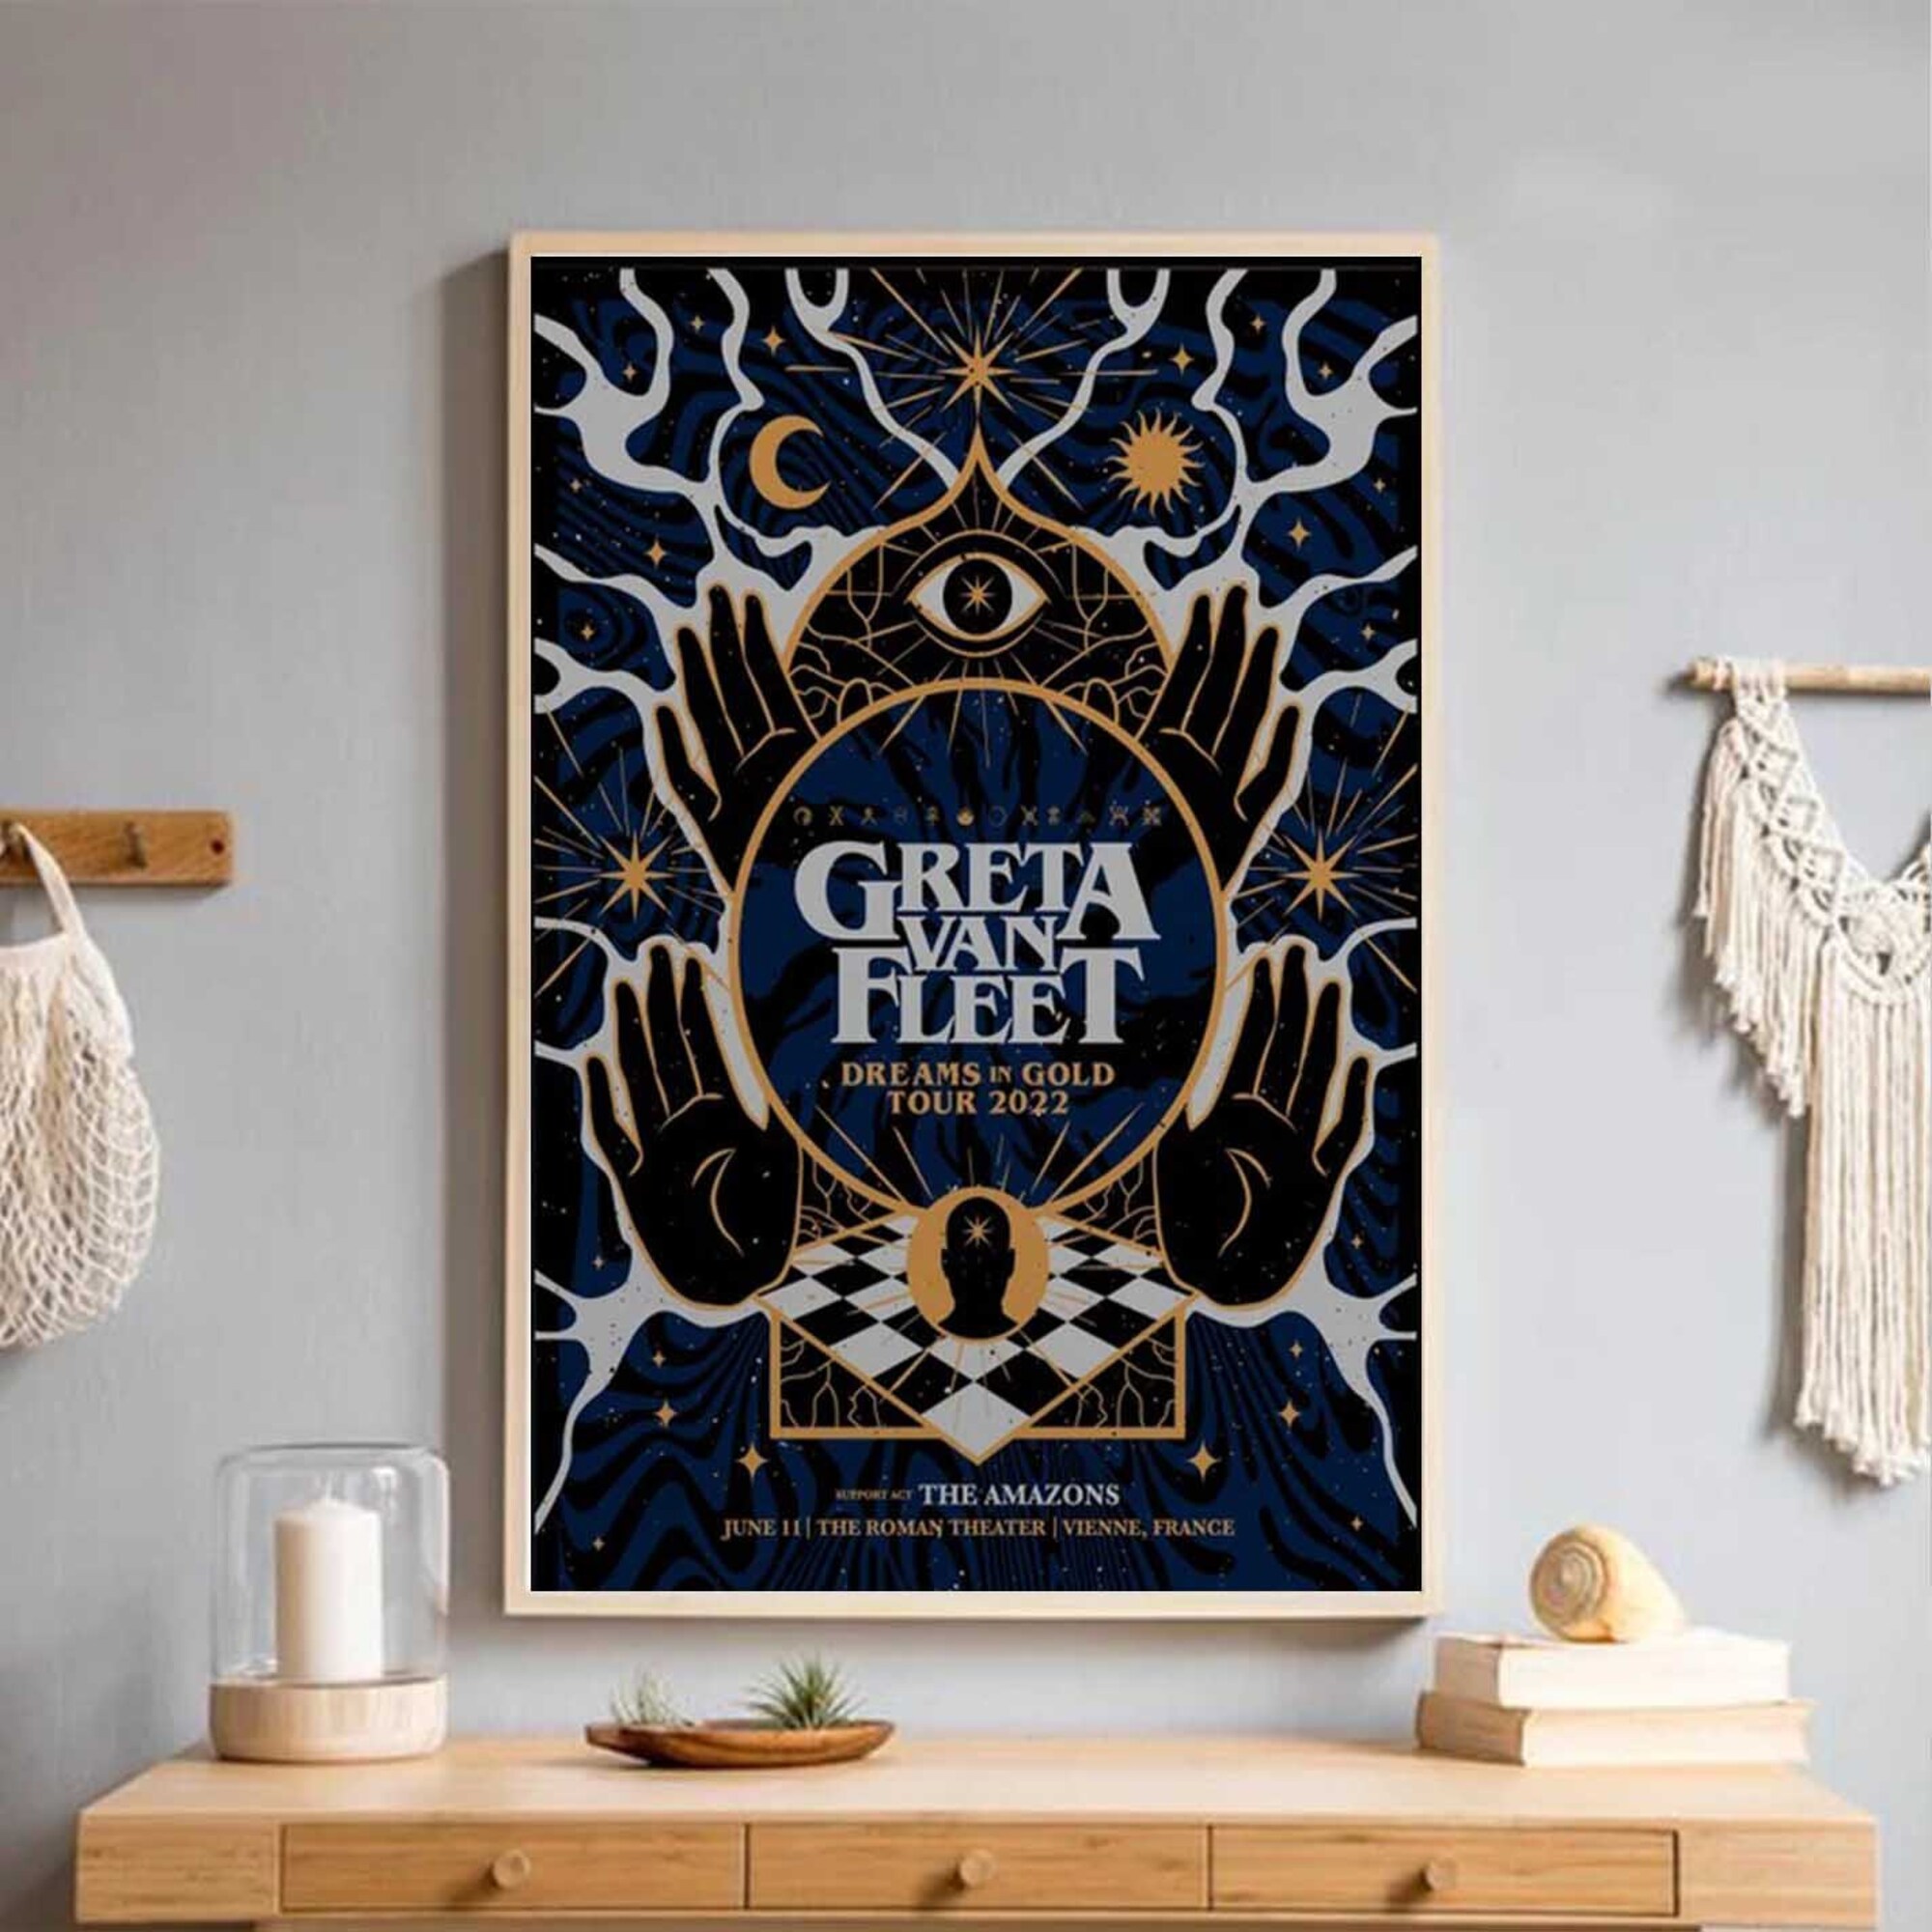 New Greta Vans Fleet Dreams In Gold Tour 2022 Poster